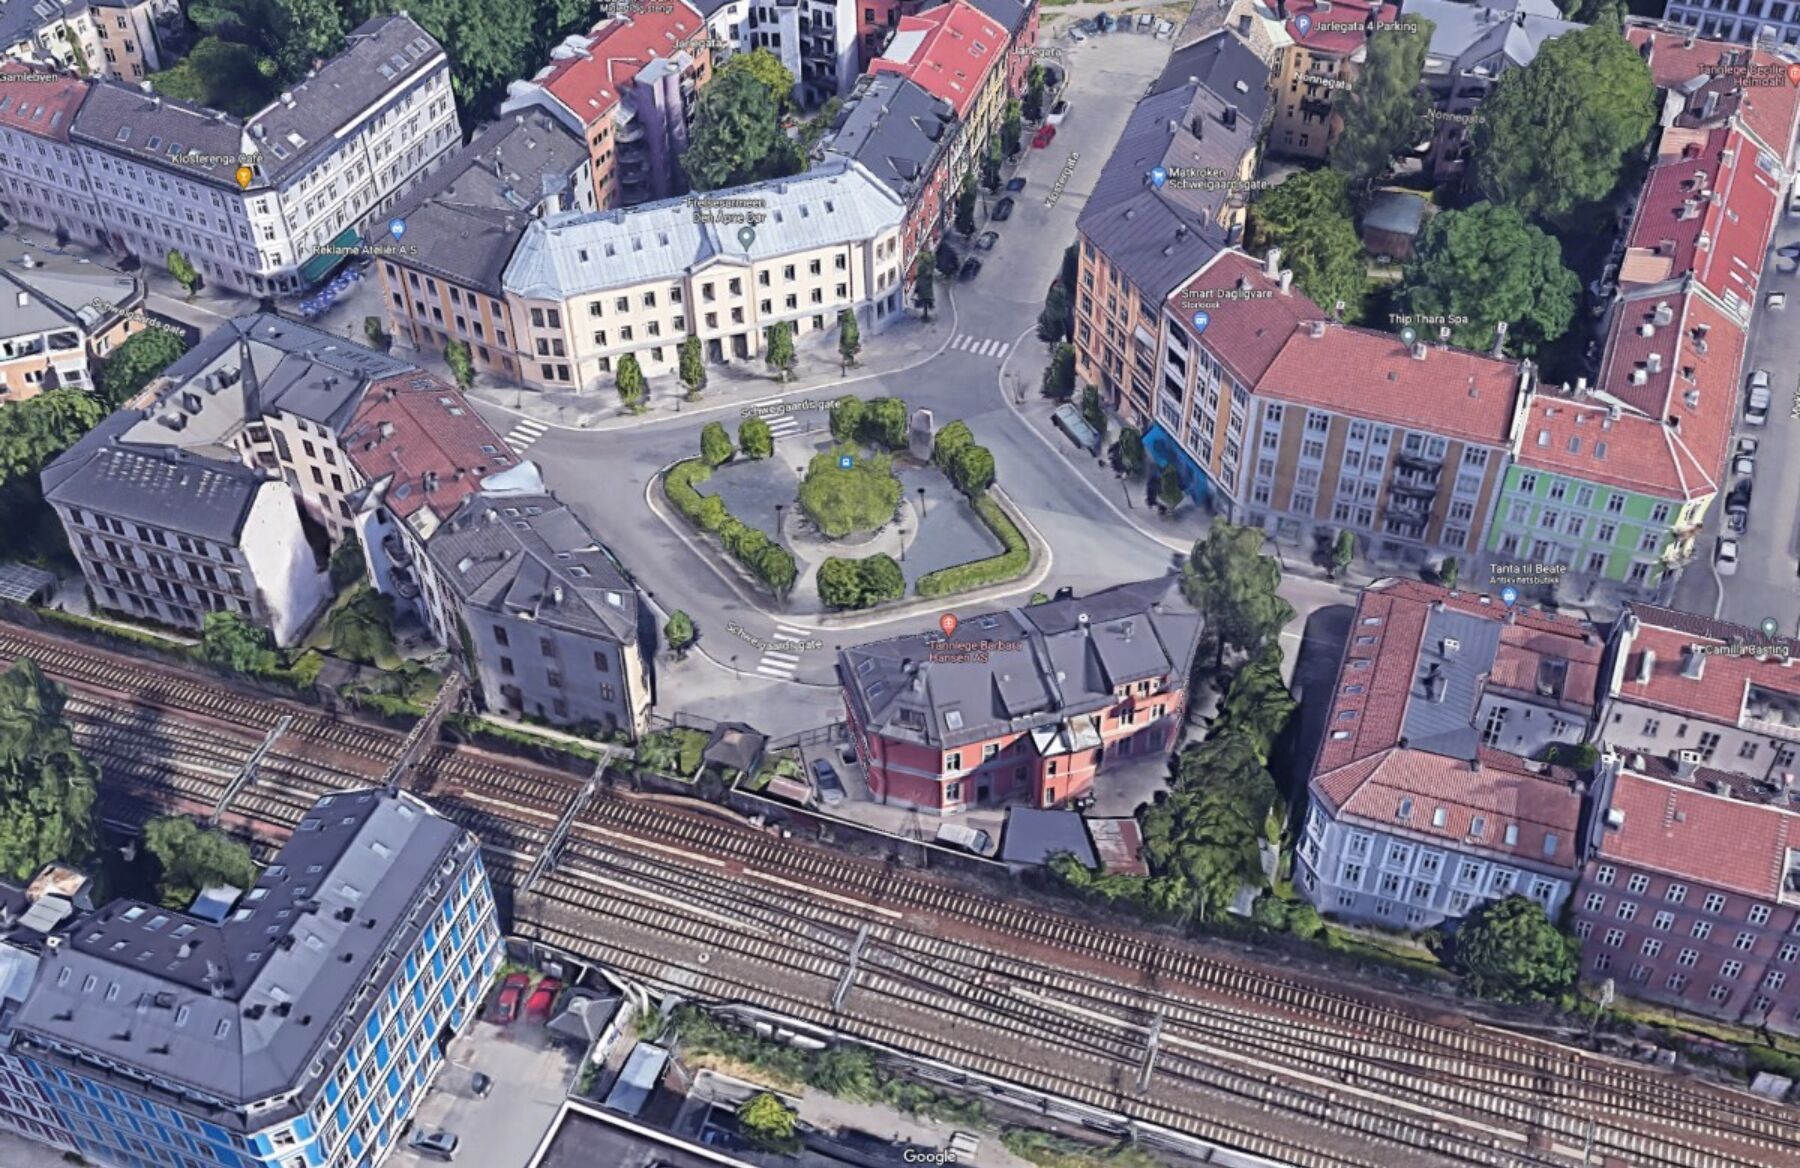 dronebilde av utsnitt gamlebyen med Harald Haardraades plass i sentrum av bildet